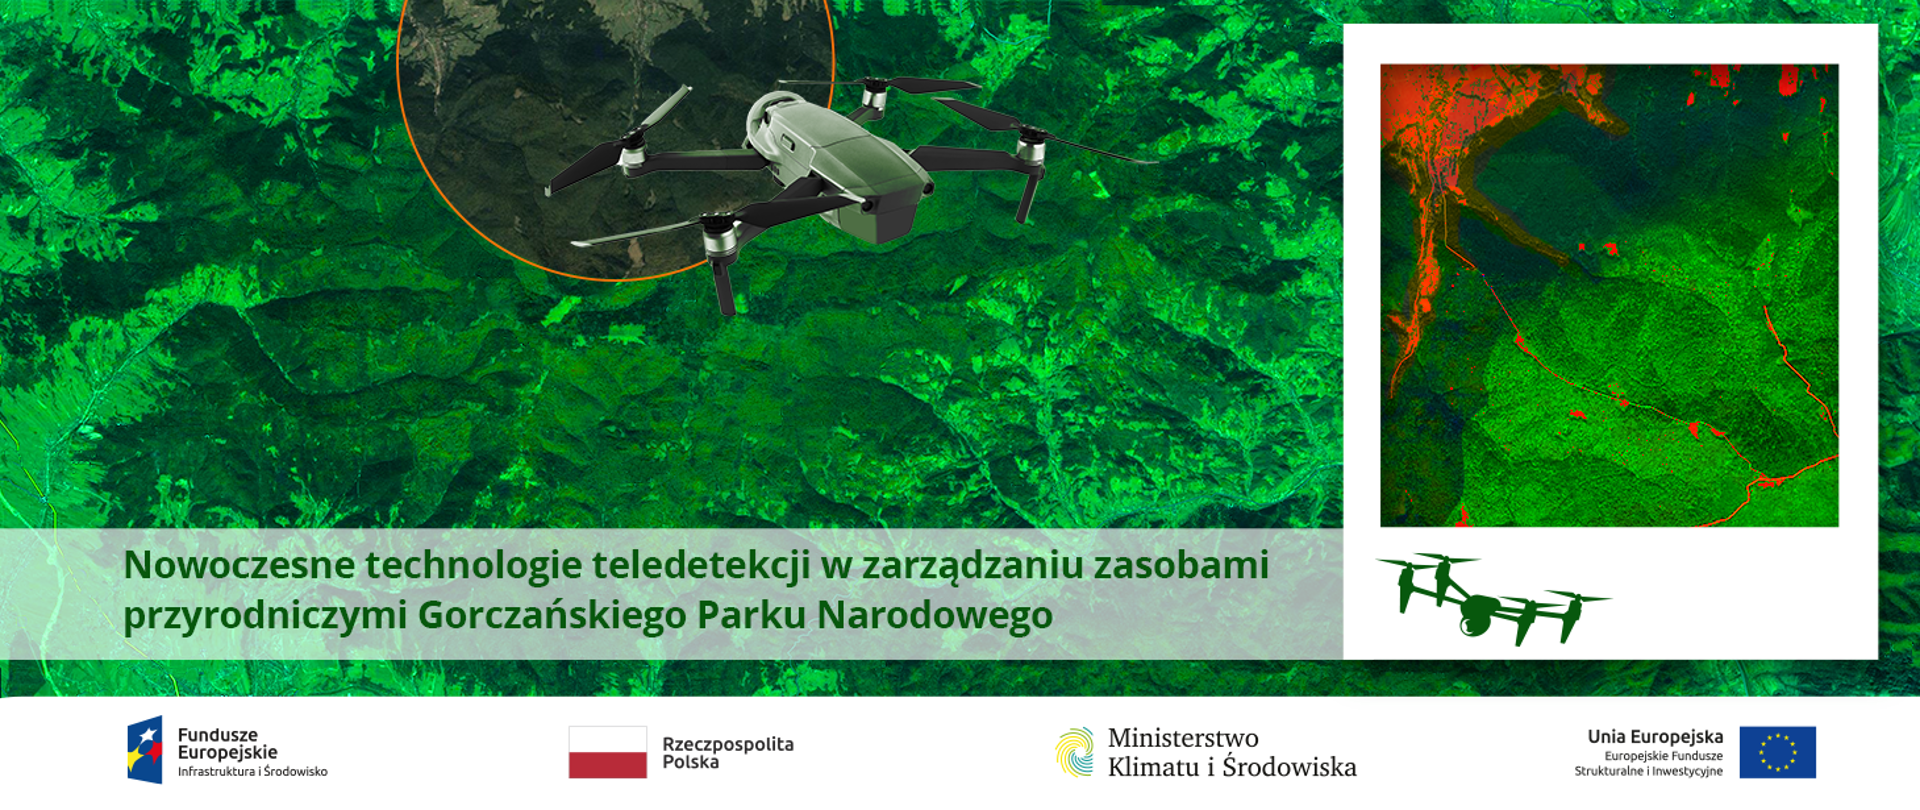 Wykorzystanie nowoczesnych technologii teledetekcyjnych w zarządzaniu zasobami przyrodniczymi Gorczańskiego Parku Narodowego oraz analiza aktualnego stanu i dynamiki chronionych ekosystemów